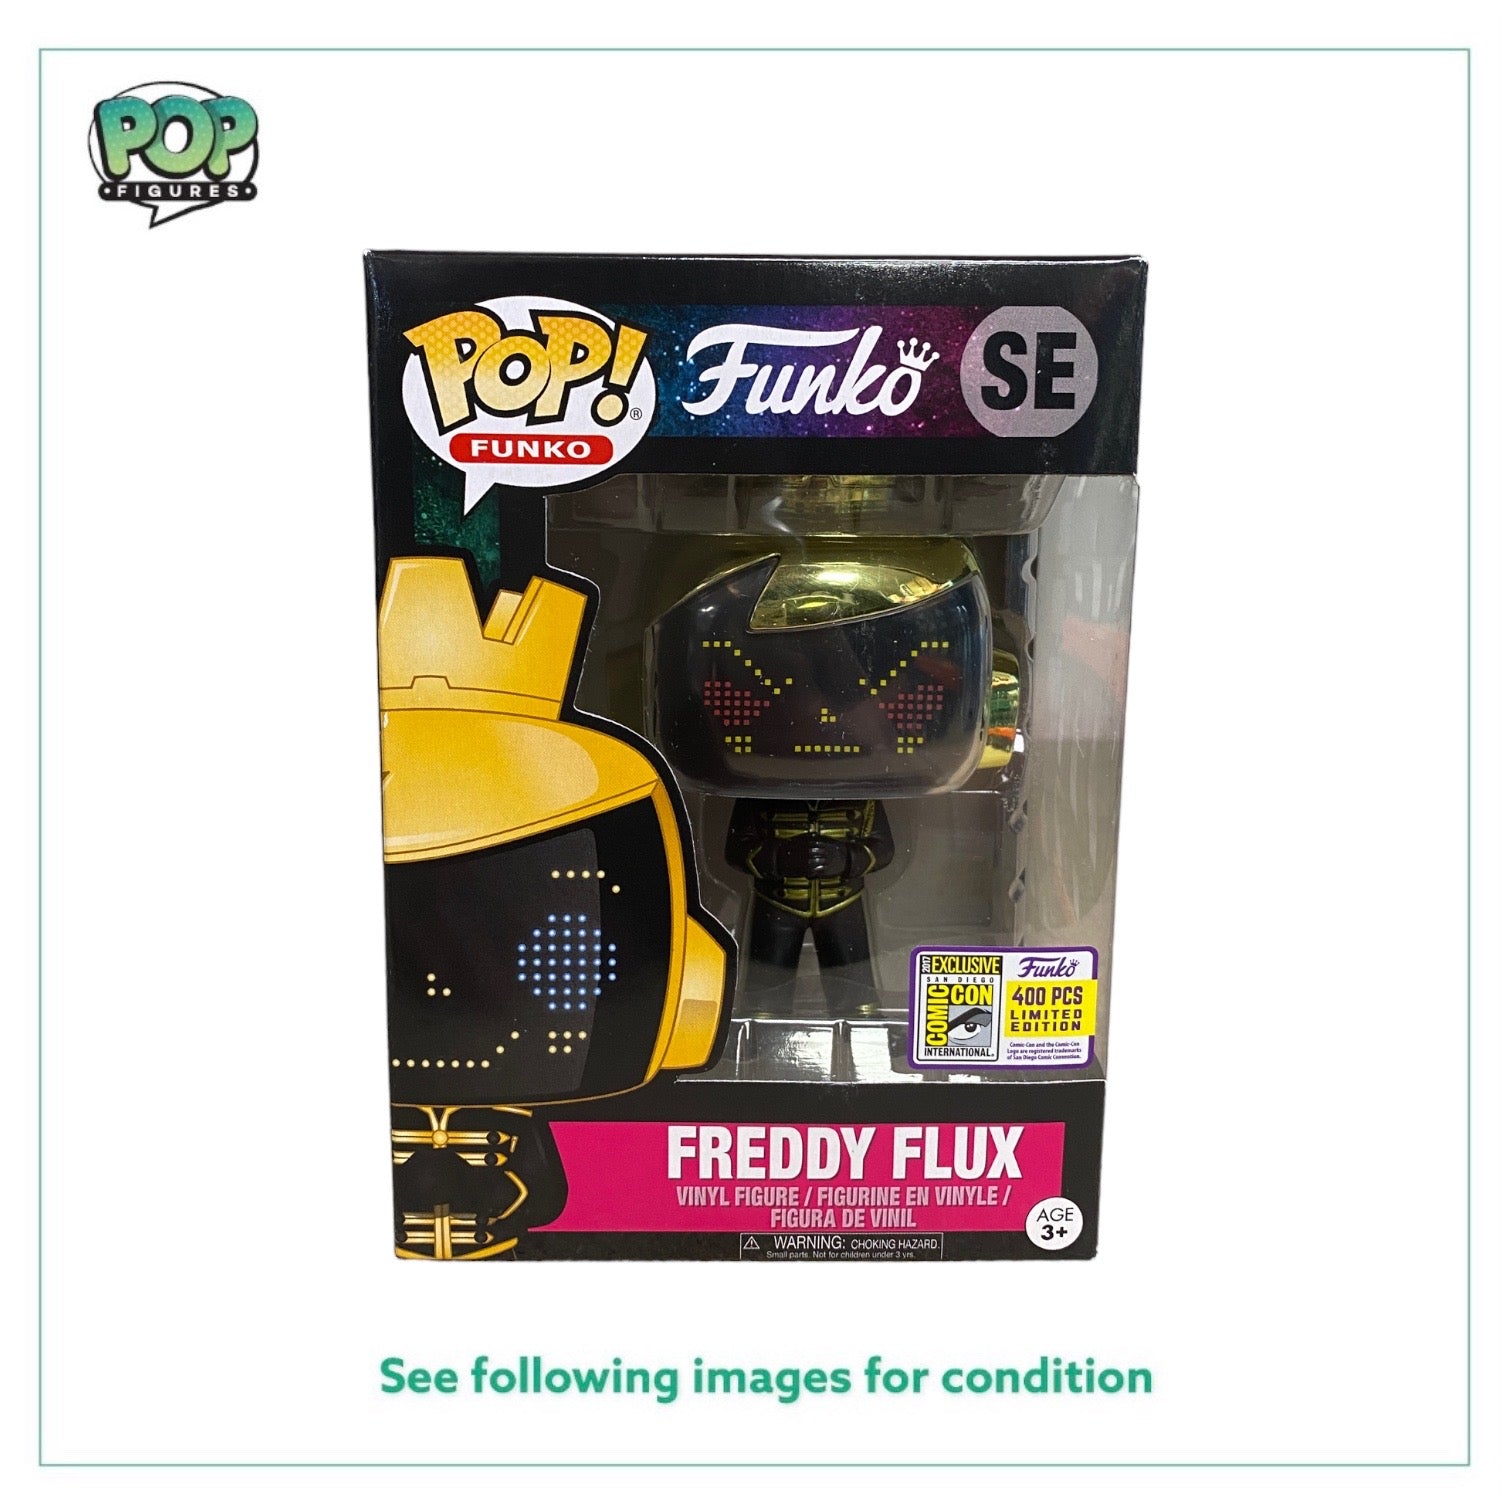 Freddy Flux Zenith Funko Pop! - SDCC 2017 Exclusive LE400 Pcs - Condition 8.75/10